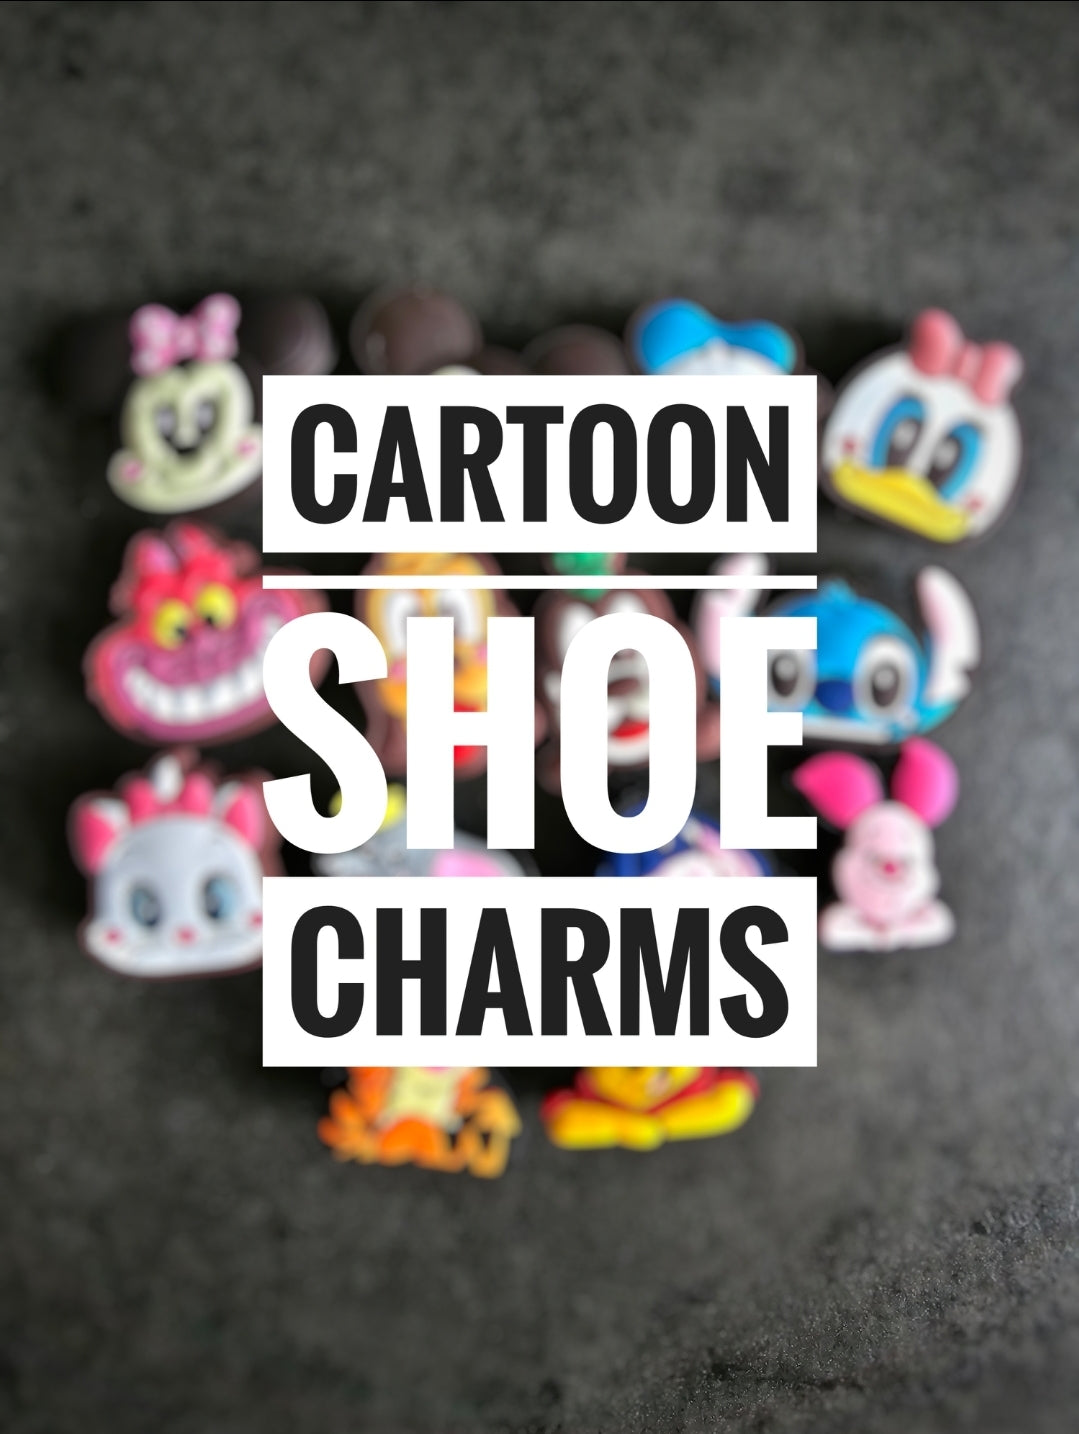 Cartoon shoe charms